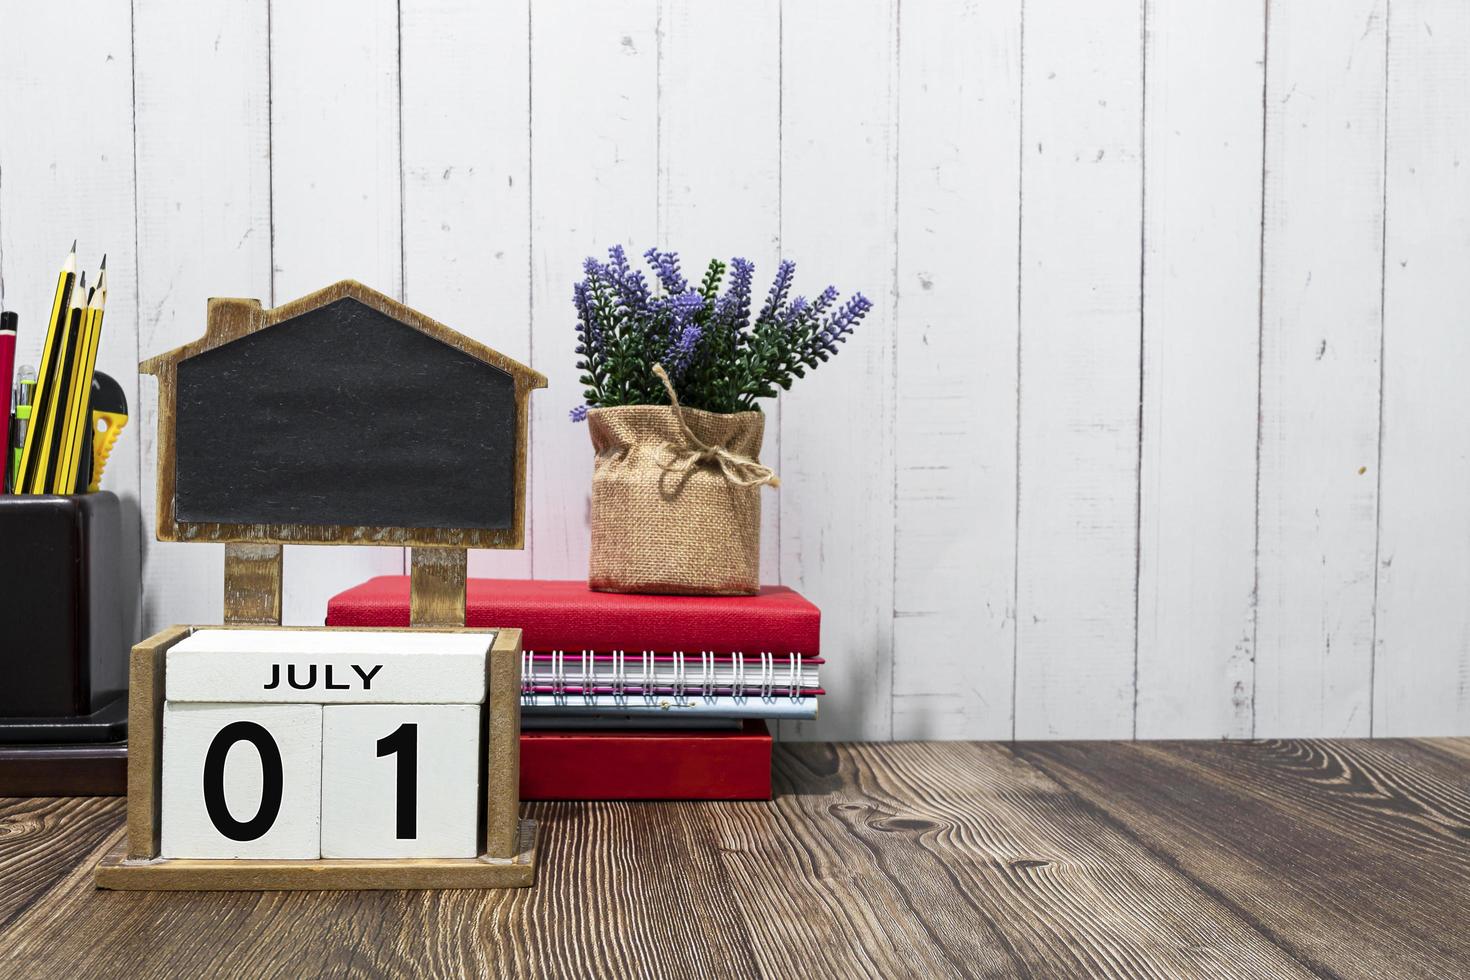 01 de julho texto de data de calendário no bloco de madeira branco uma mesa. foto